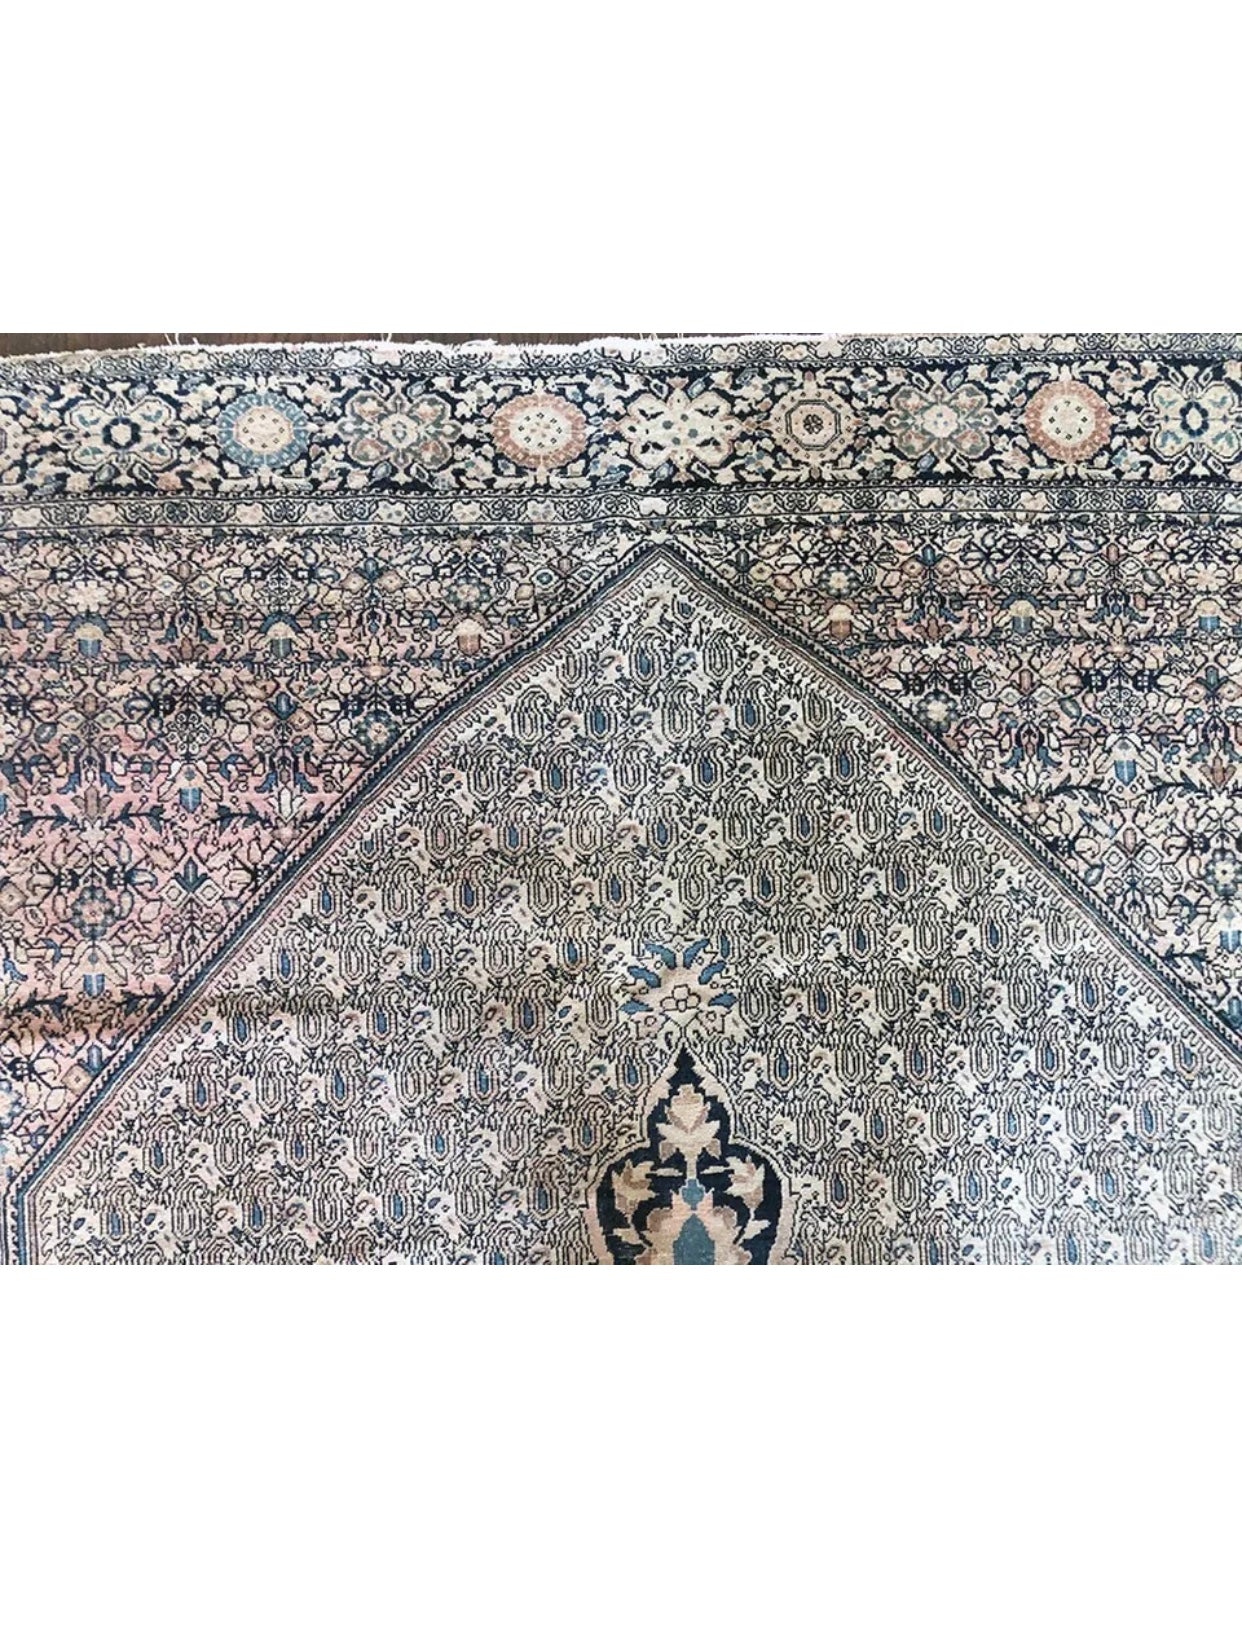 A Gorgeous Antique Persian Ferahan Sarouk Rug “Paisley”